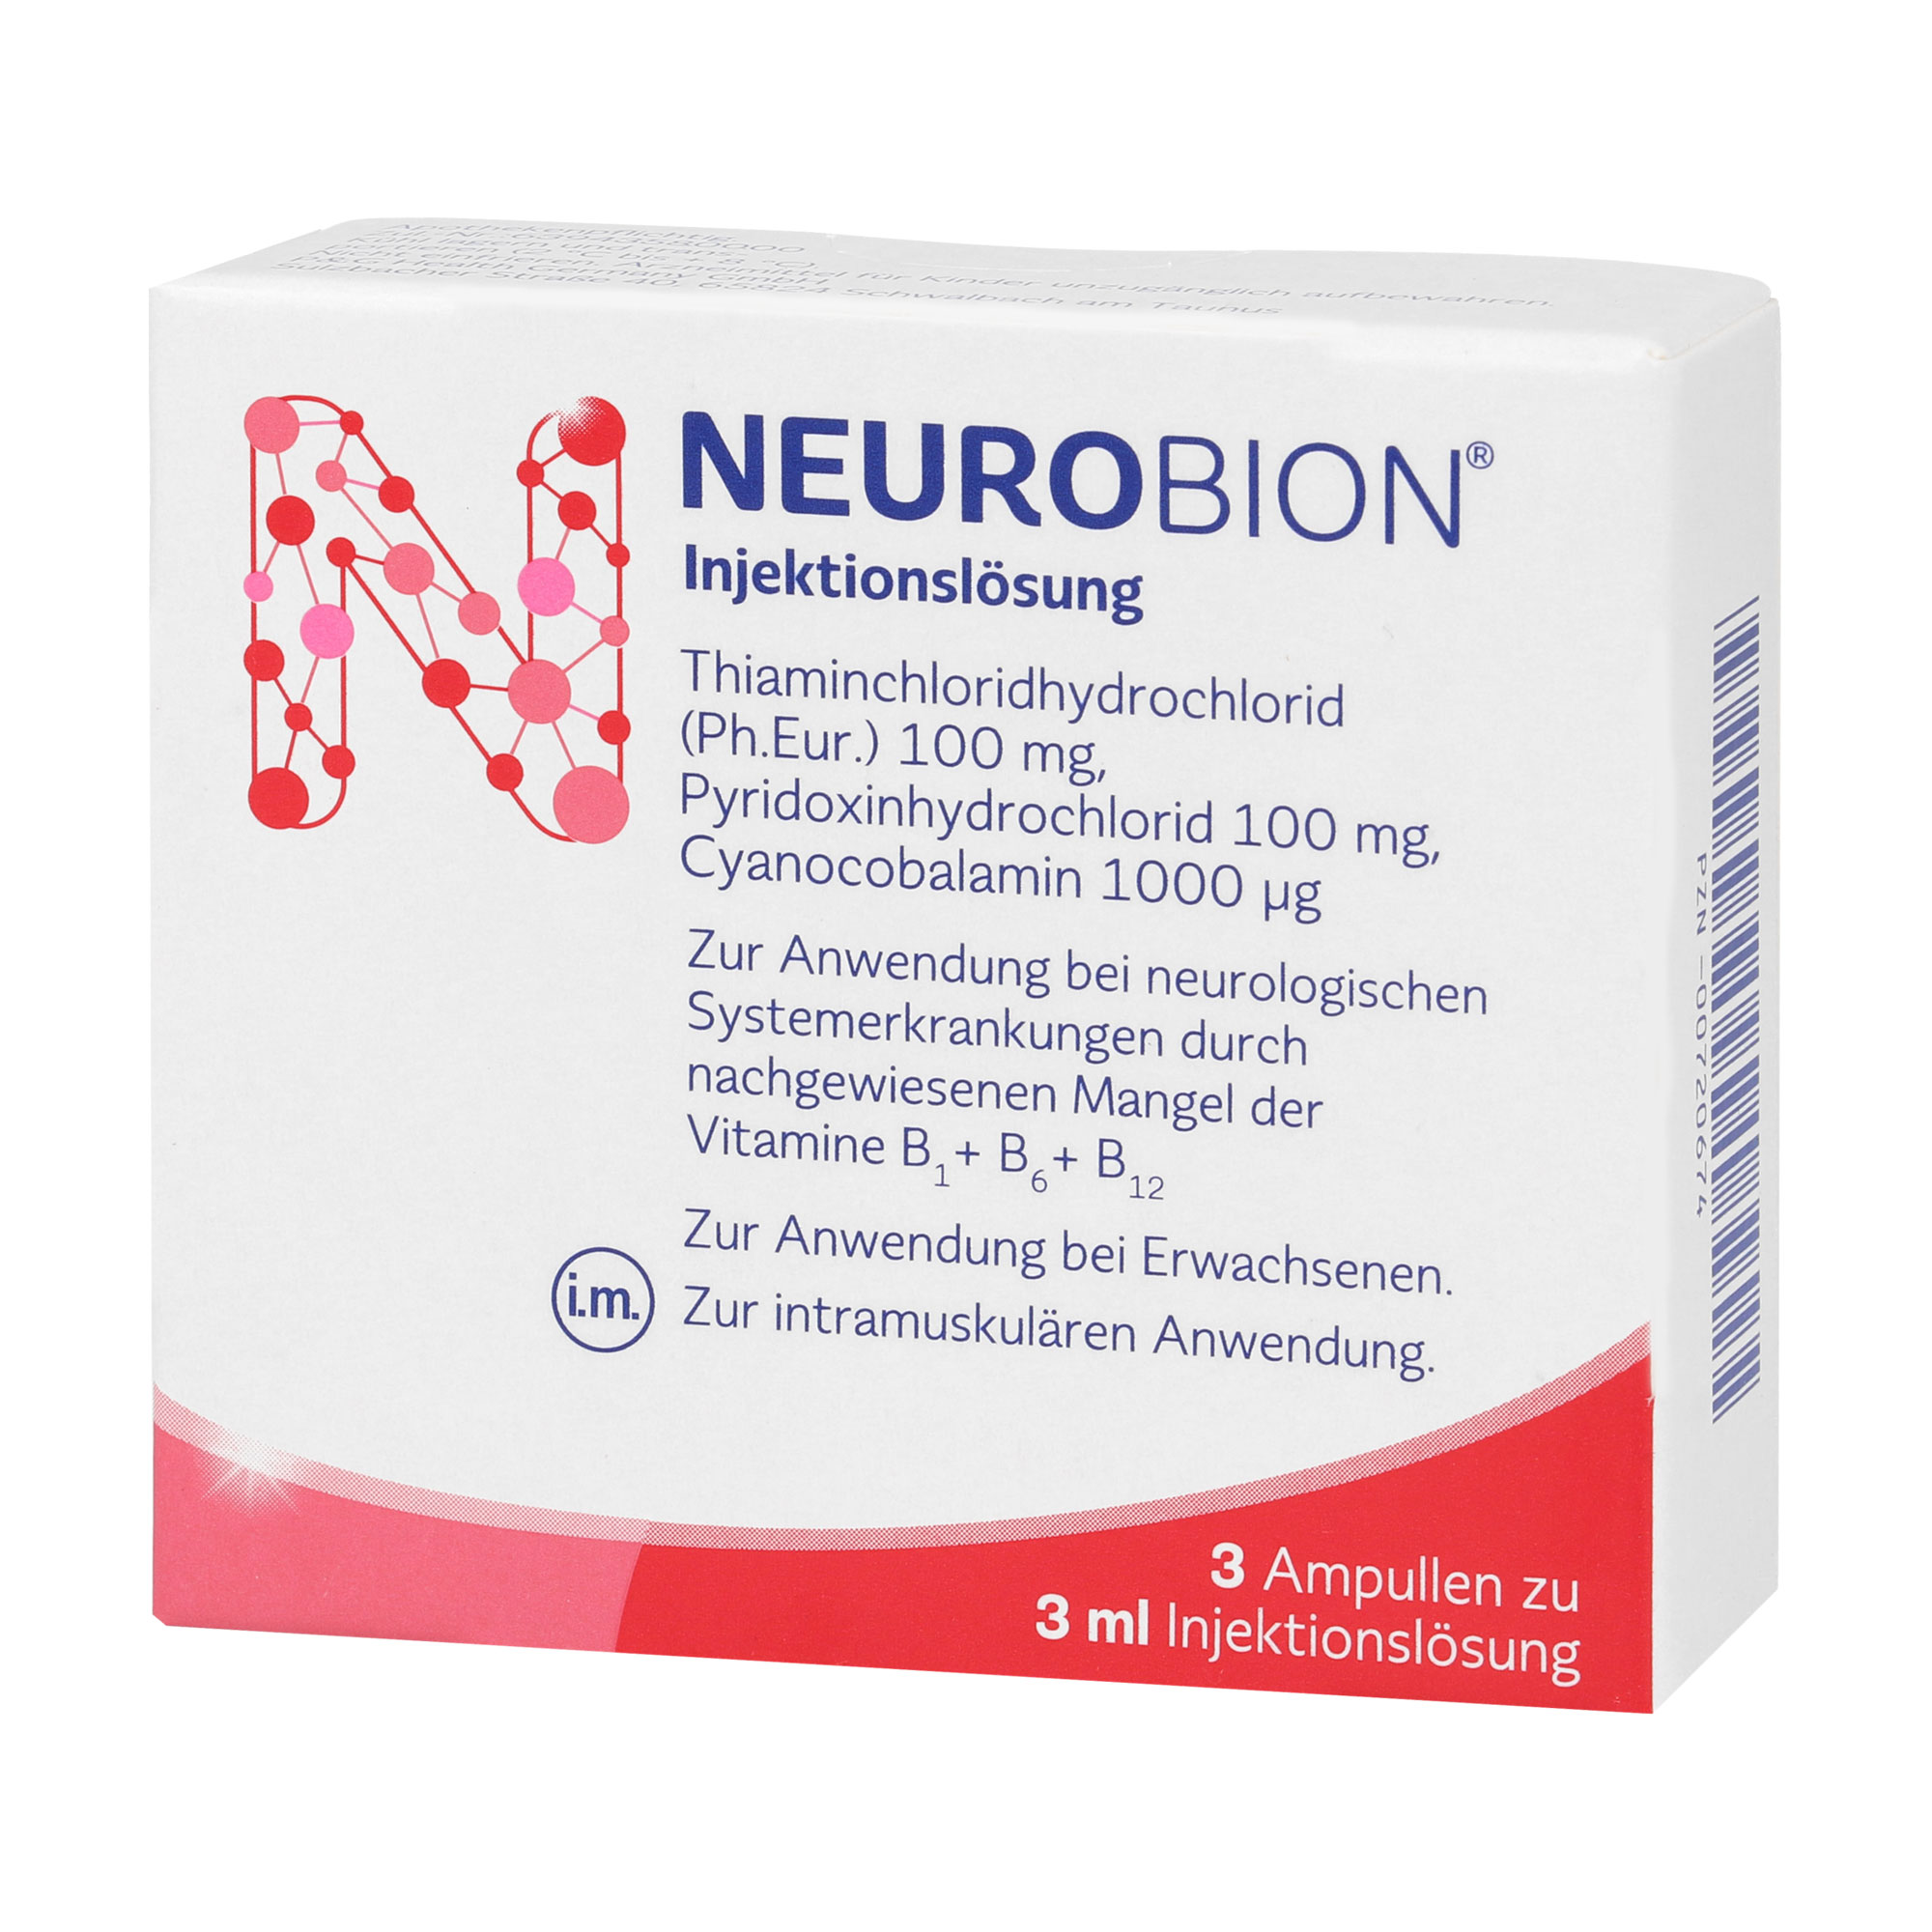 Anzuwenden bei neurologischen Systemerkrankungen durch nachgewiesenen Mangel der Vitamine B1, B6, und B12.